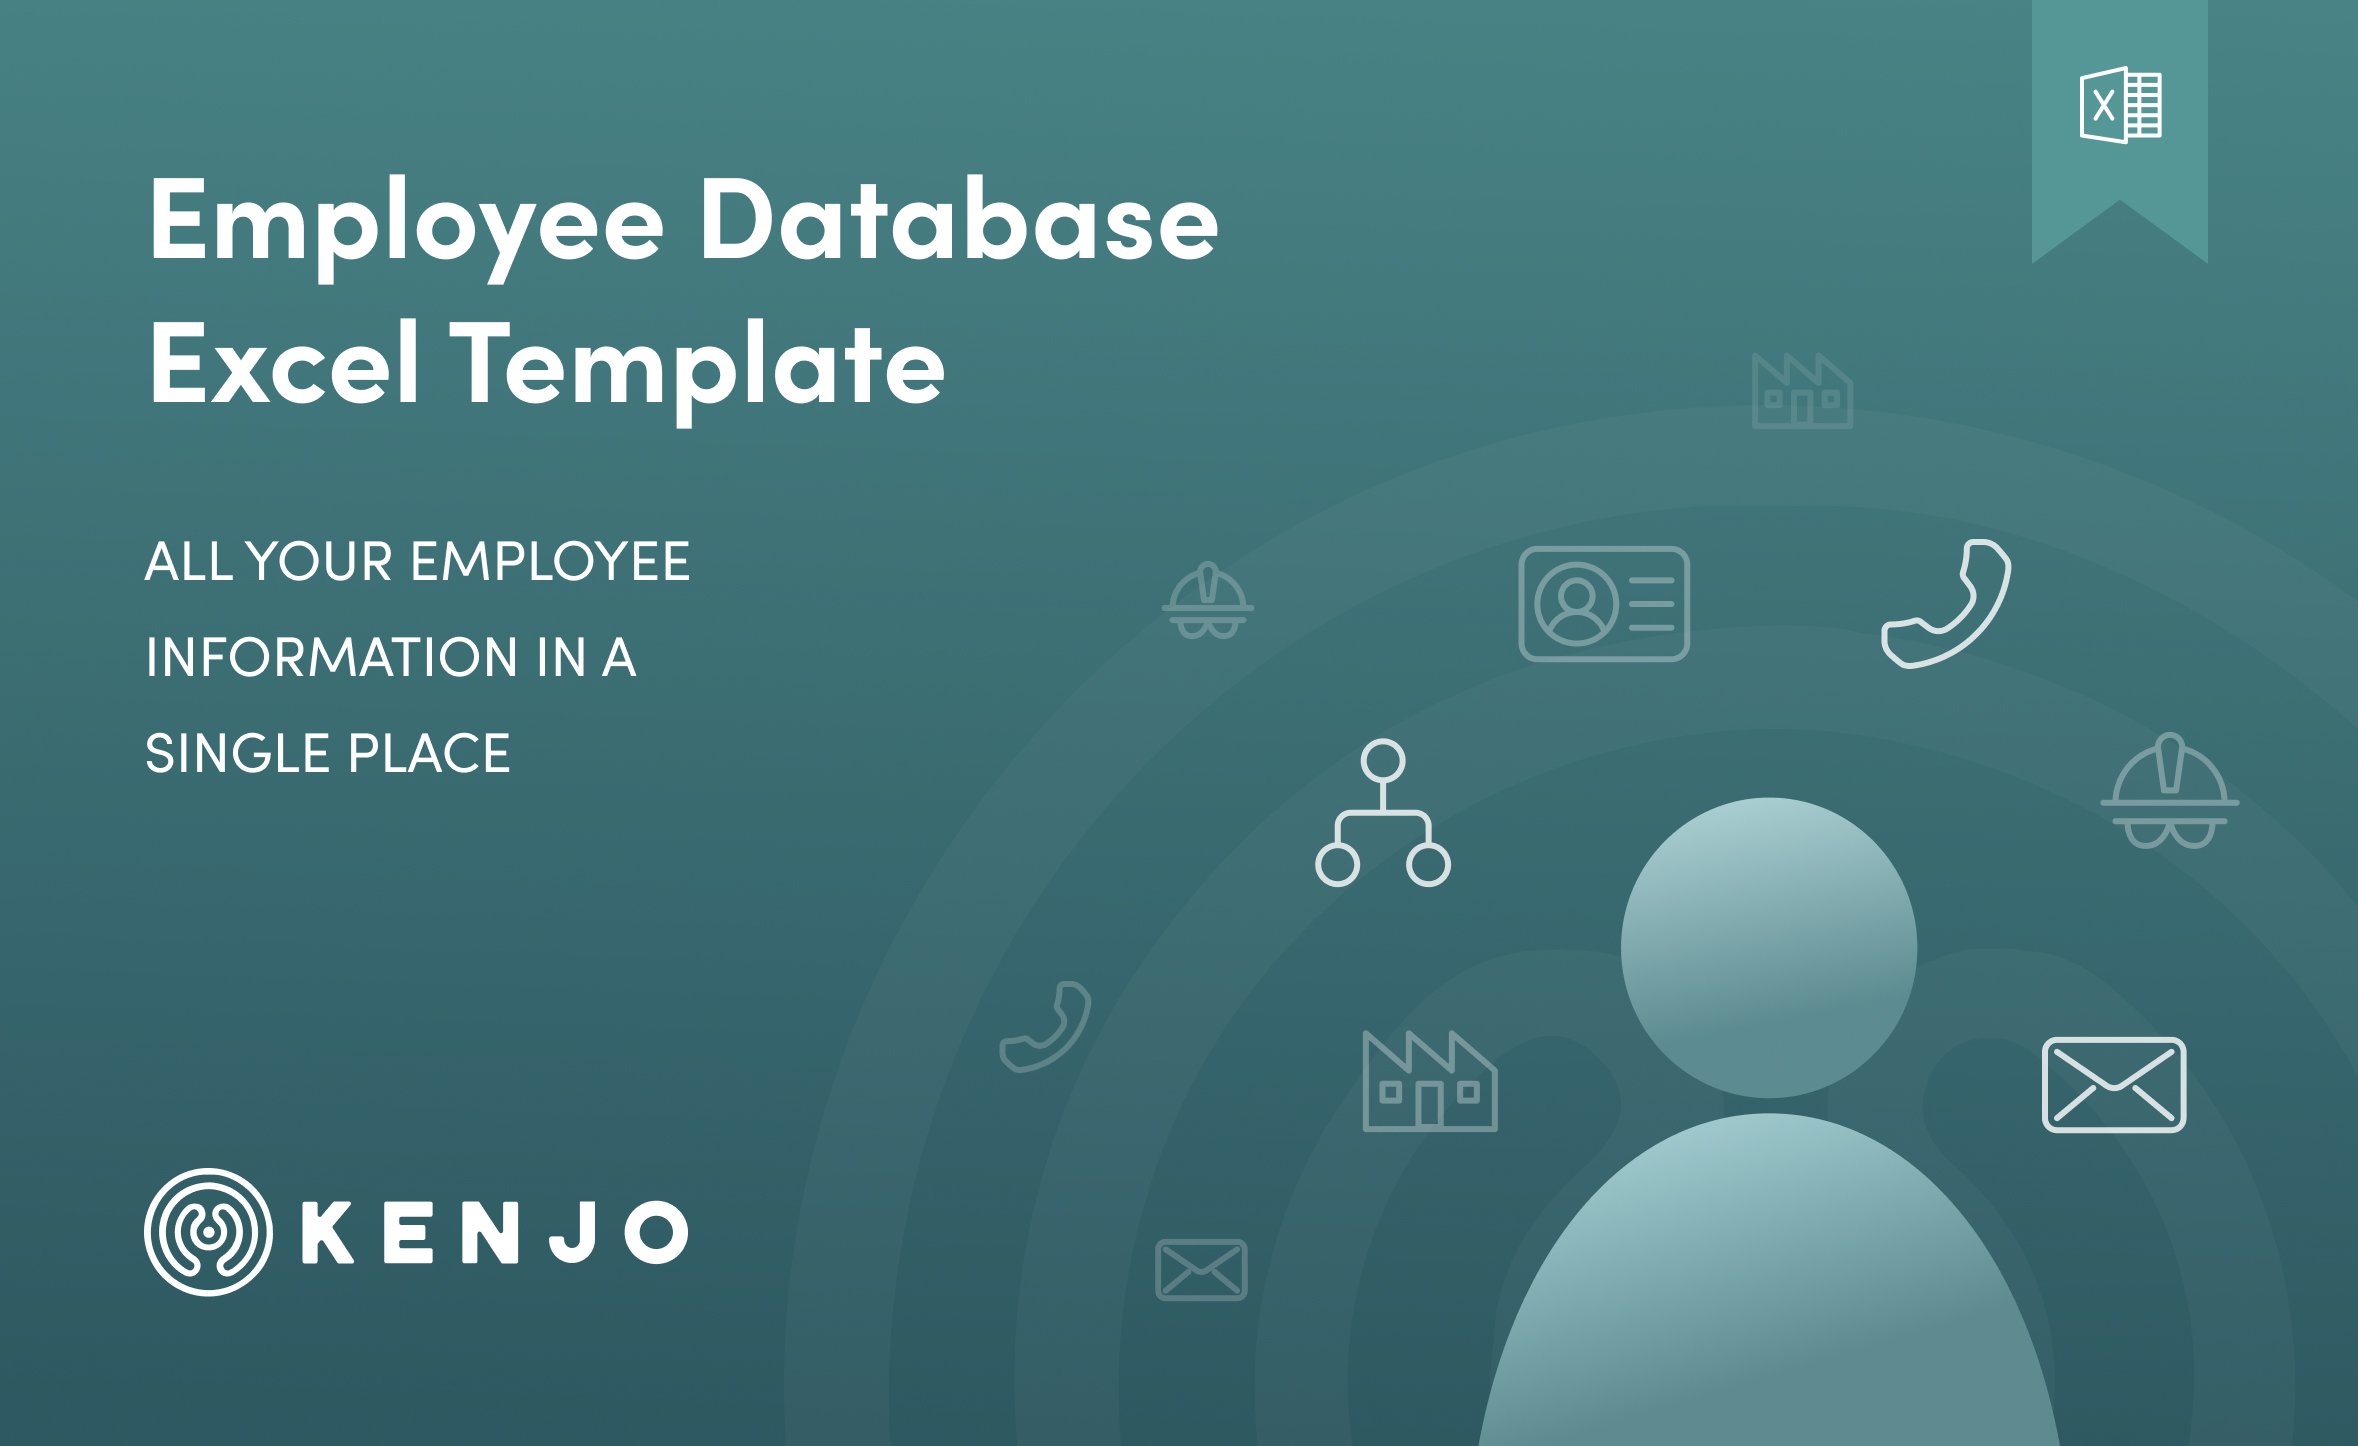 Preview_Kenjo_Employee Database_Template_EN